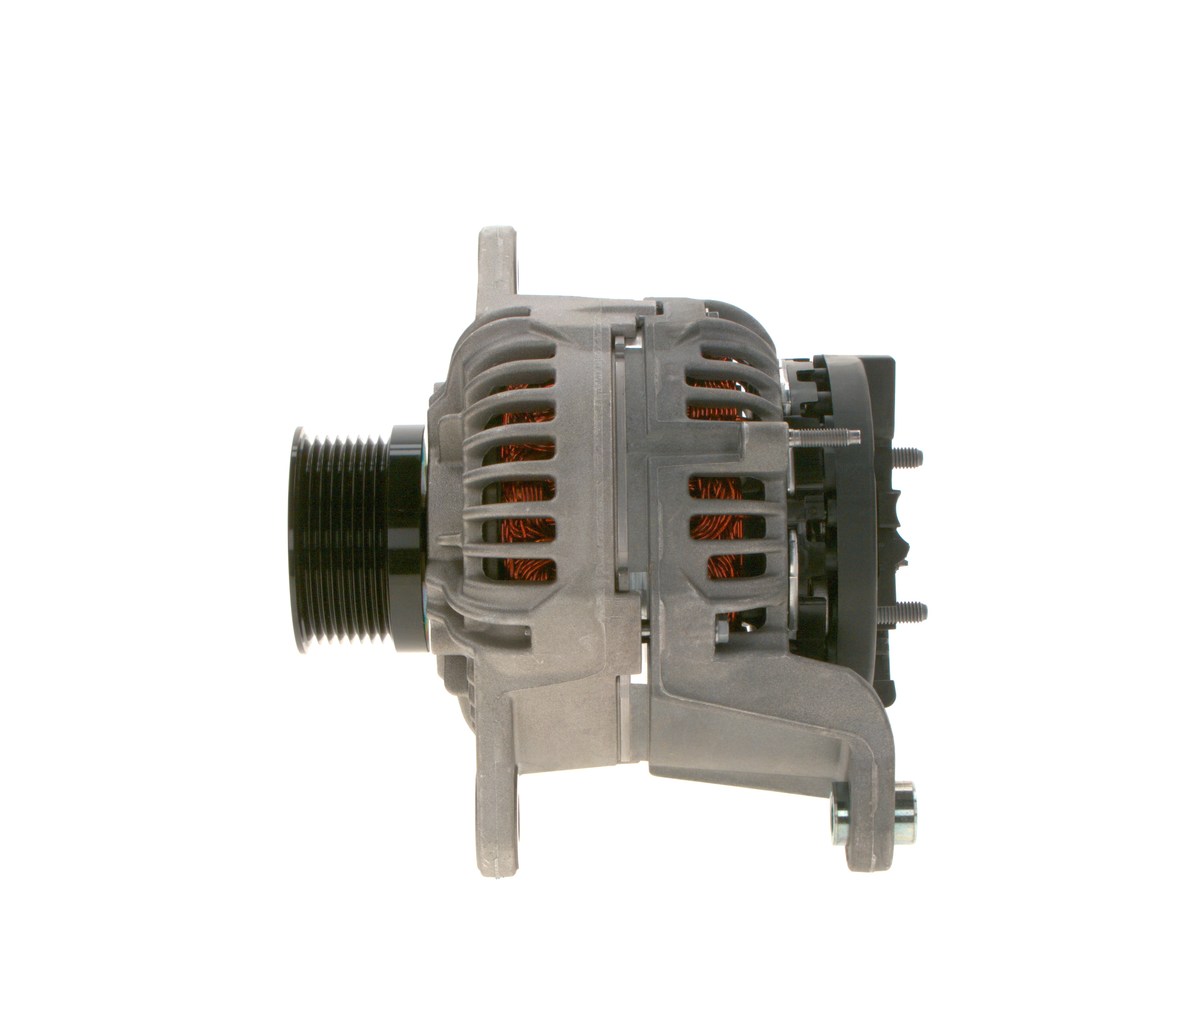 HD10LEB (>) 28V 50/120 BOSCH 28V, 120A, excl. vacuum pump, Ø 73 mm Generator 0 124 655 451 buy